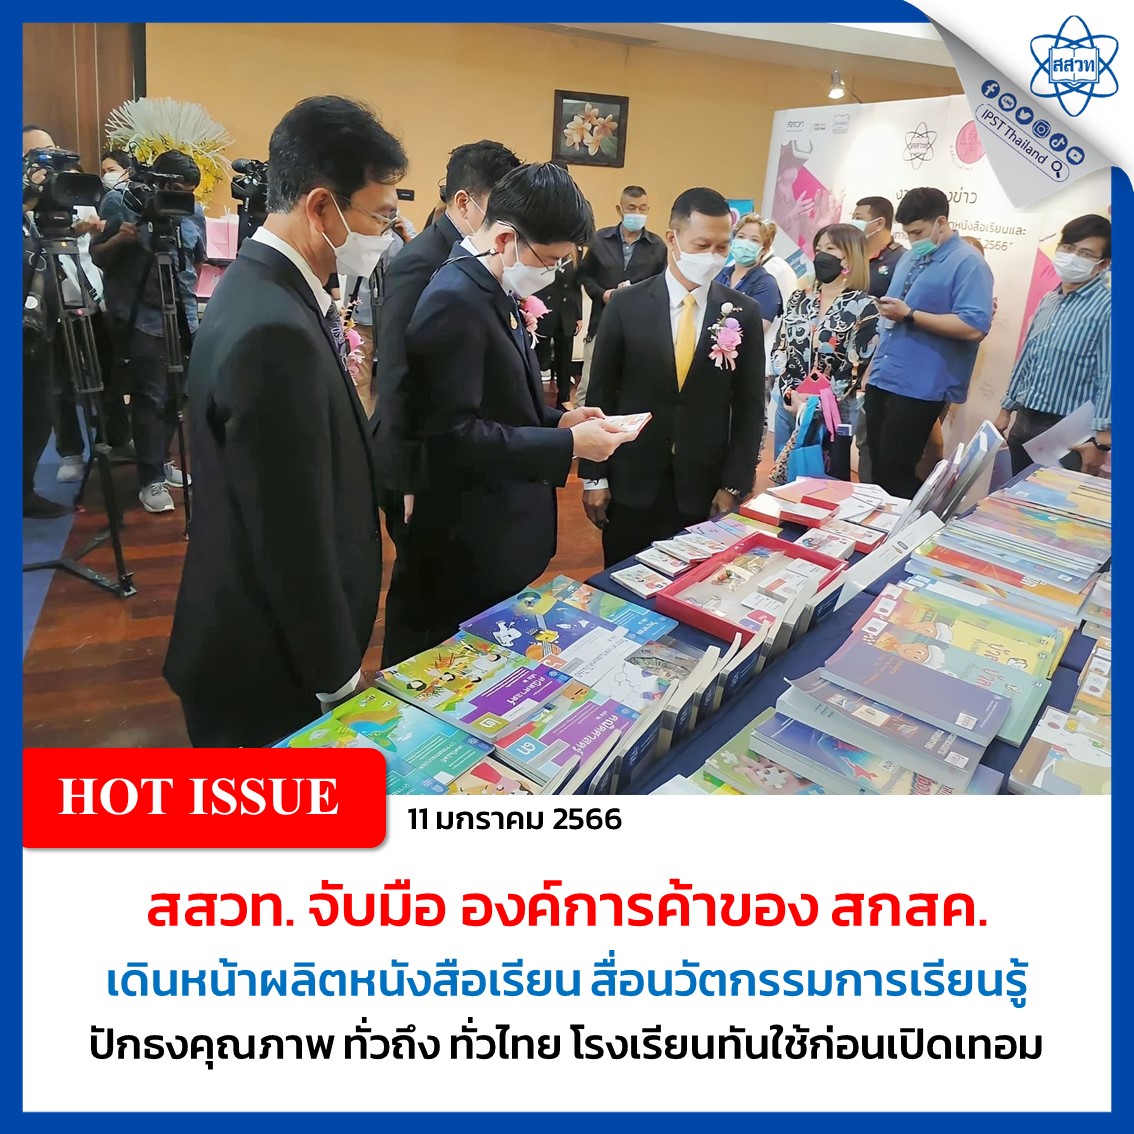 สสวท. จับมือ องค์การค้าของ สกสค. เดินหน้าผลิตหนังสือเรียน สื่อนวัตกรรมการเรียนรู้ ปักธงคุณภาพ ทั่วถึง ทั่วไทย โรงเรียนทันใช้ก่อนเปิดเทอม